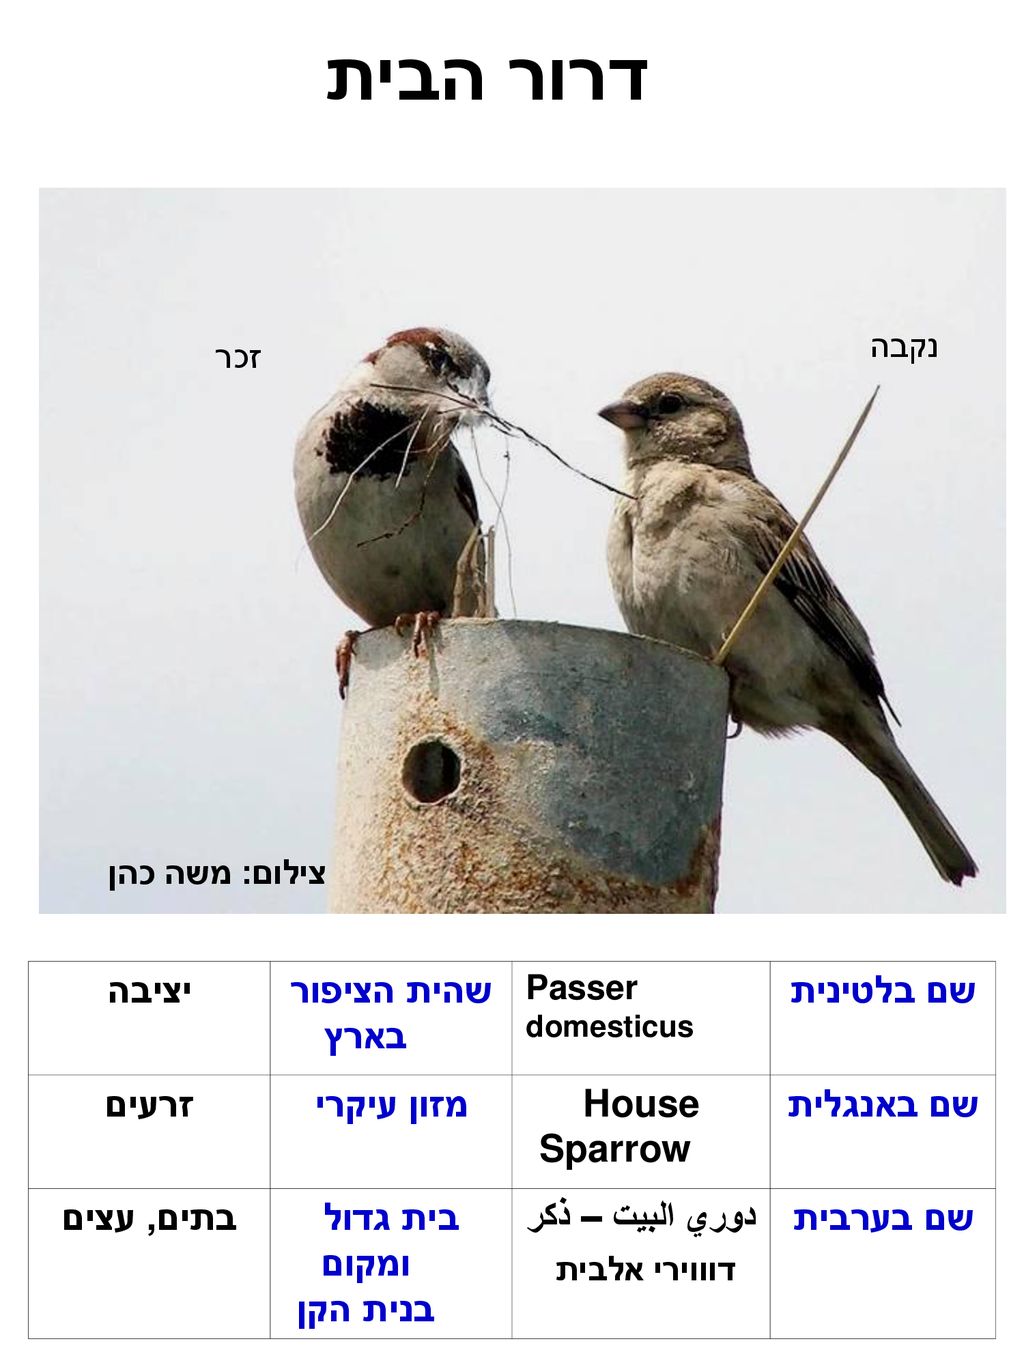 דרור הבית שם בלטינית שהית הציפור בארץ יציבה שם באנגלית House Sparrow